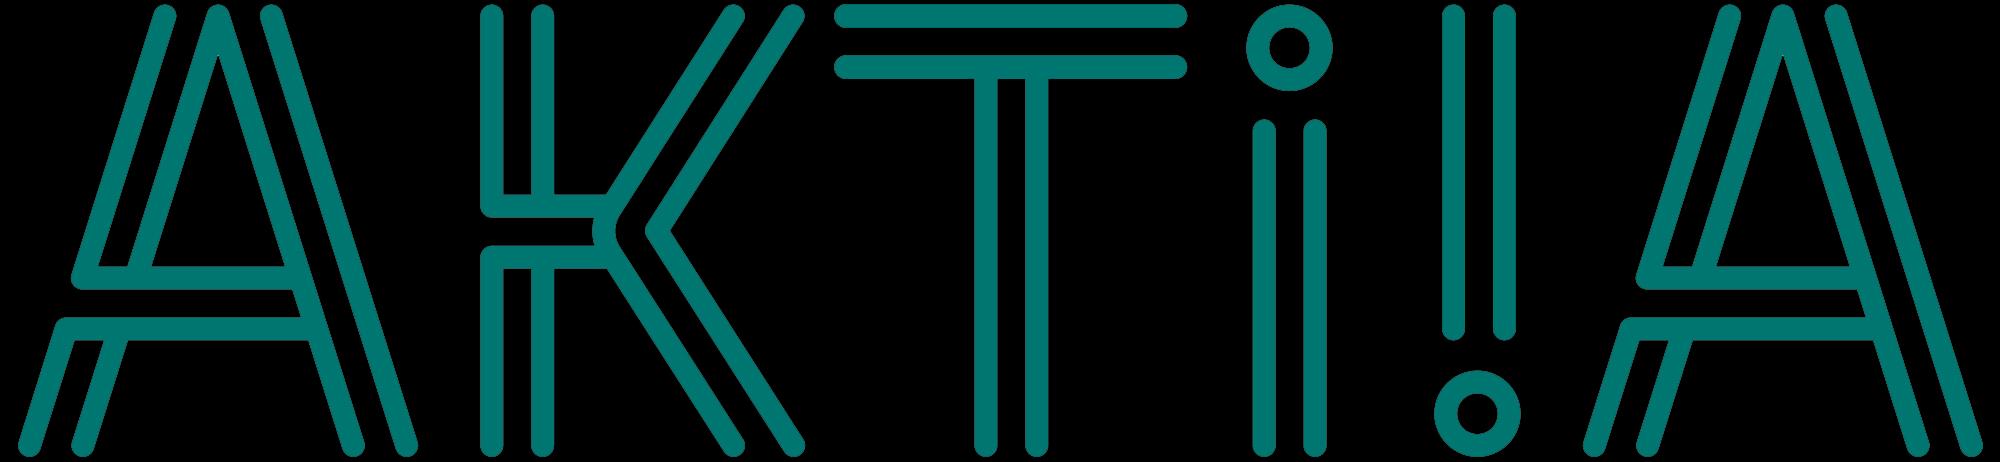 Aktiia_logo